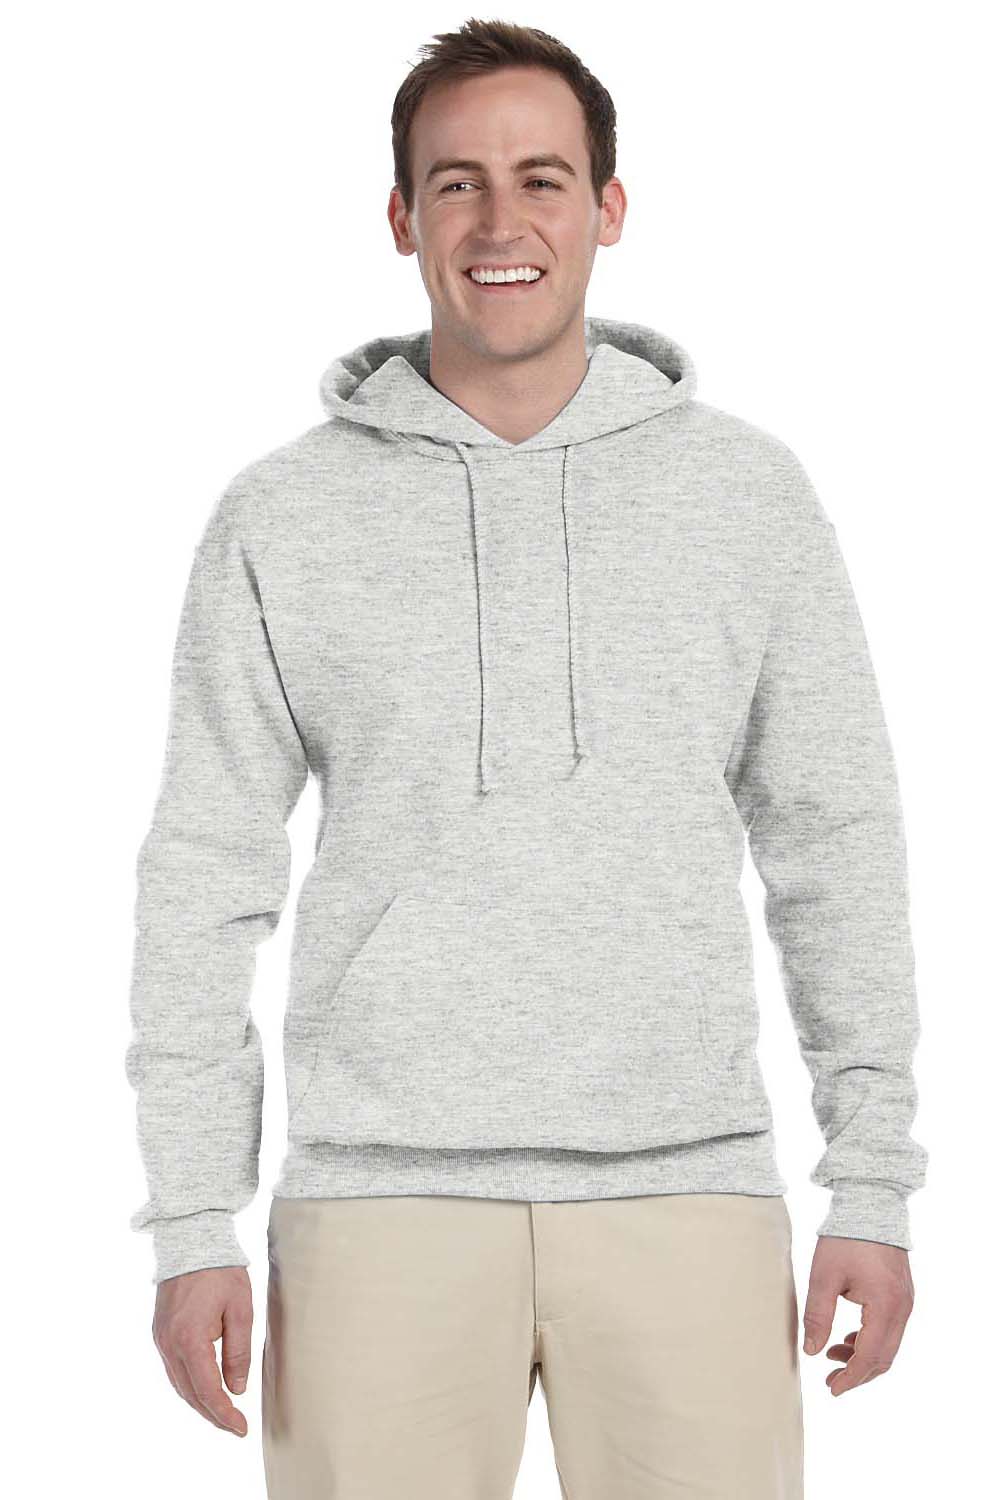 Jerzees 996M/996/996MR Mens Ash Grey NuBlend Pill Resistant Fleece Hooded  Sweatshirt Hoodie —